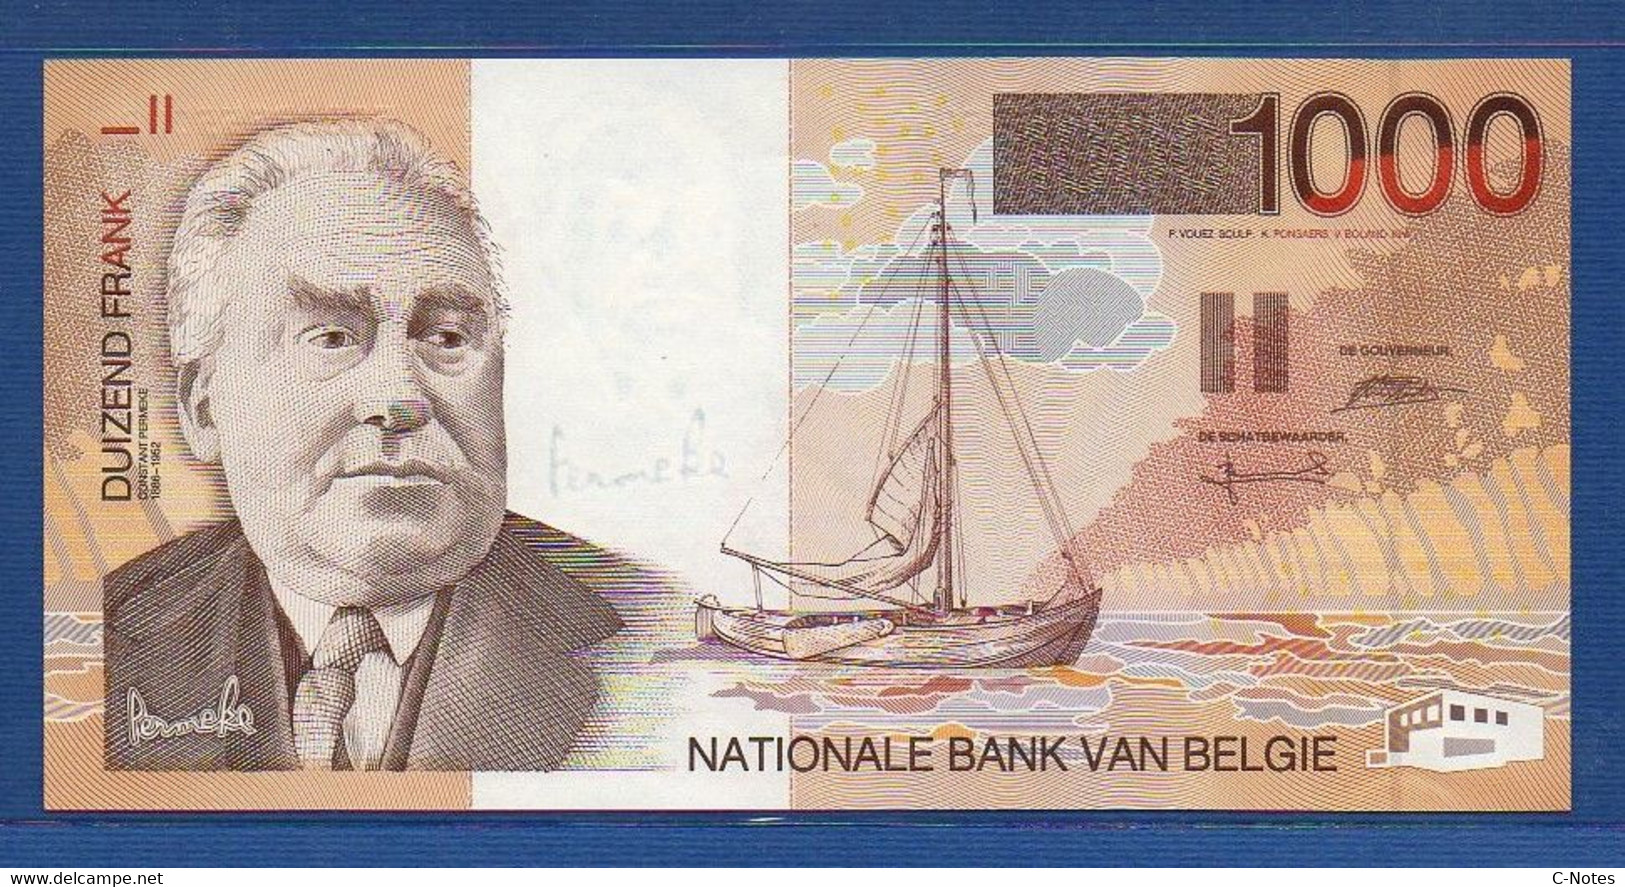 BELGIUM - P.150 - 1000 Francs ND (1997) UNC, Serie 50802655068 - 1000 Frank